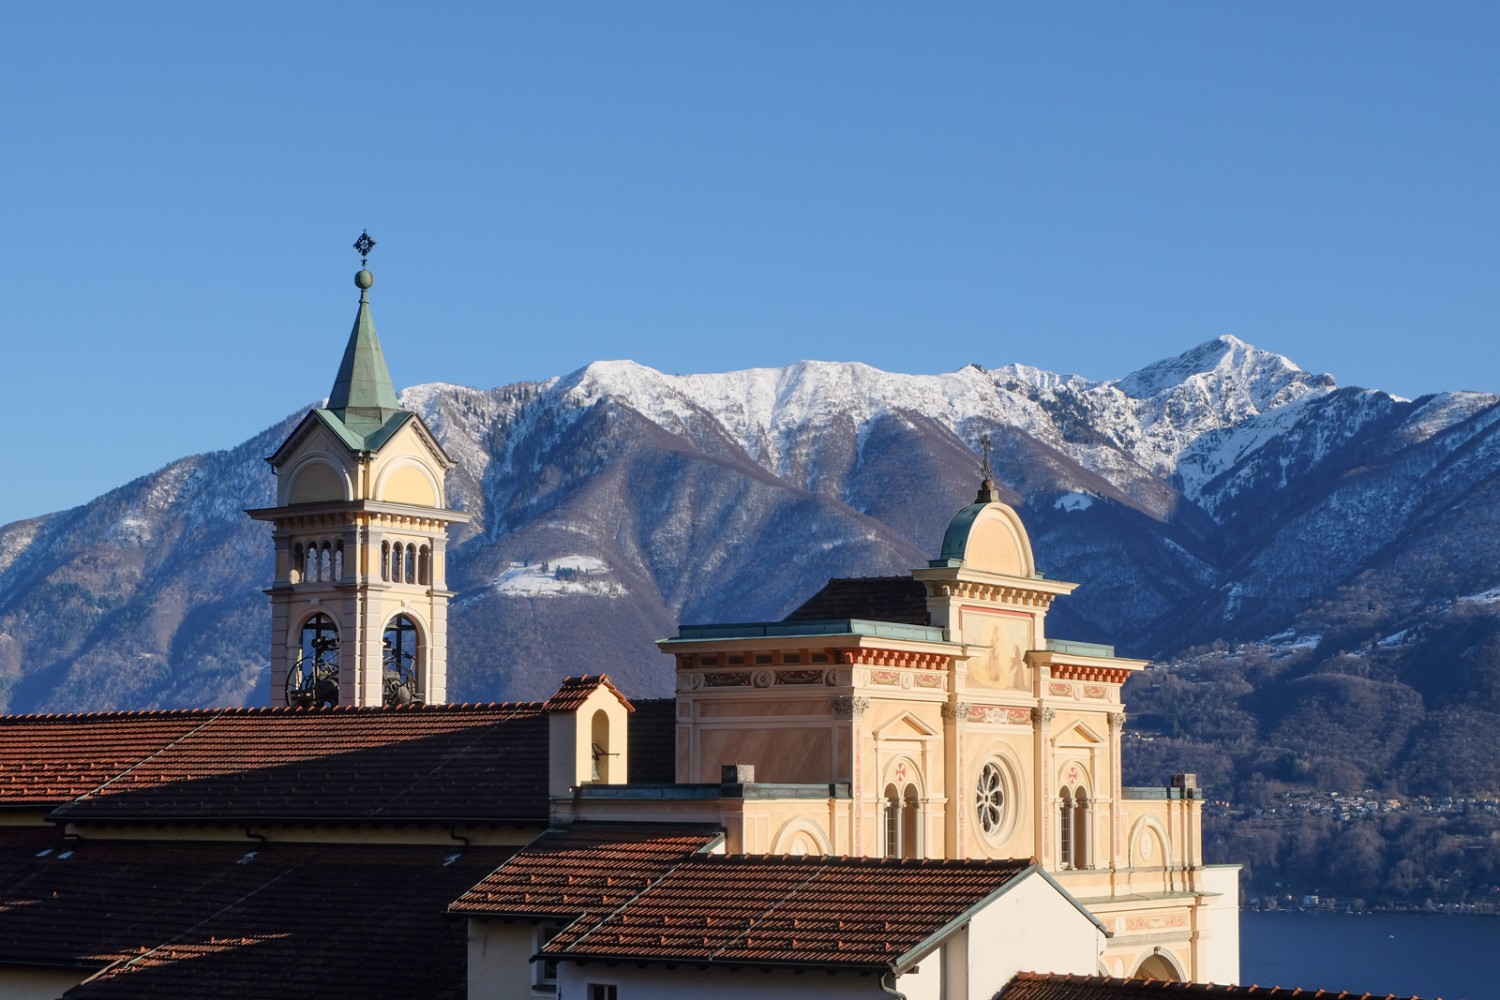 Auf der Fahrt zurück nach Locarno lohnt sich ein Besuch der Wallfahrtskirche in Orselina.